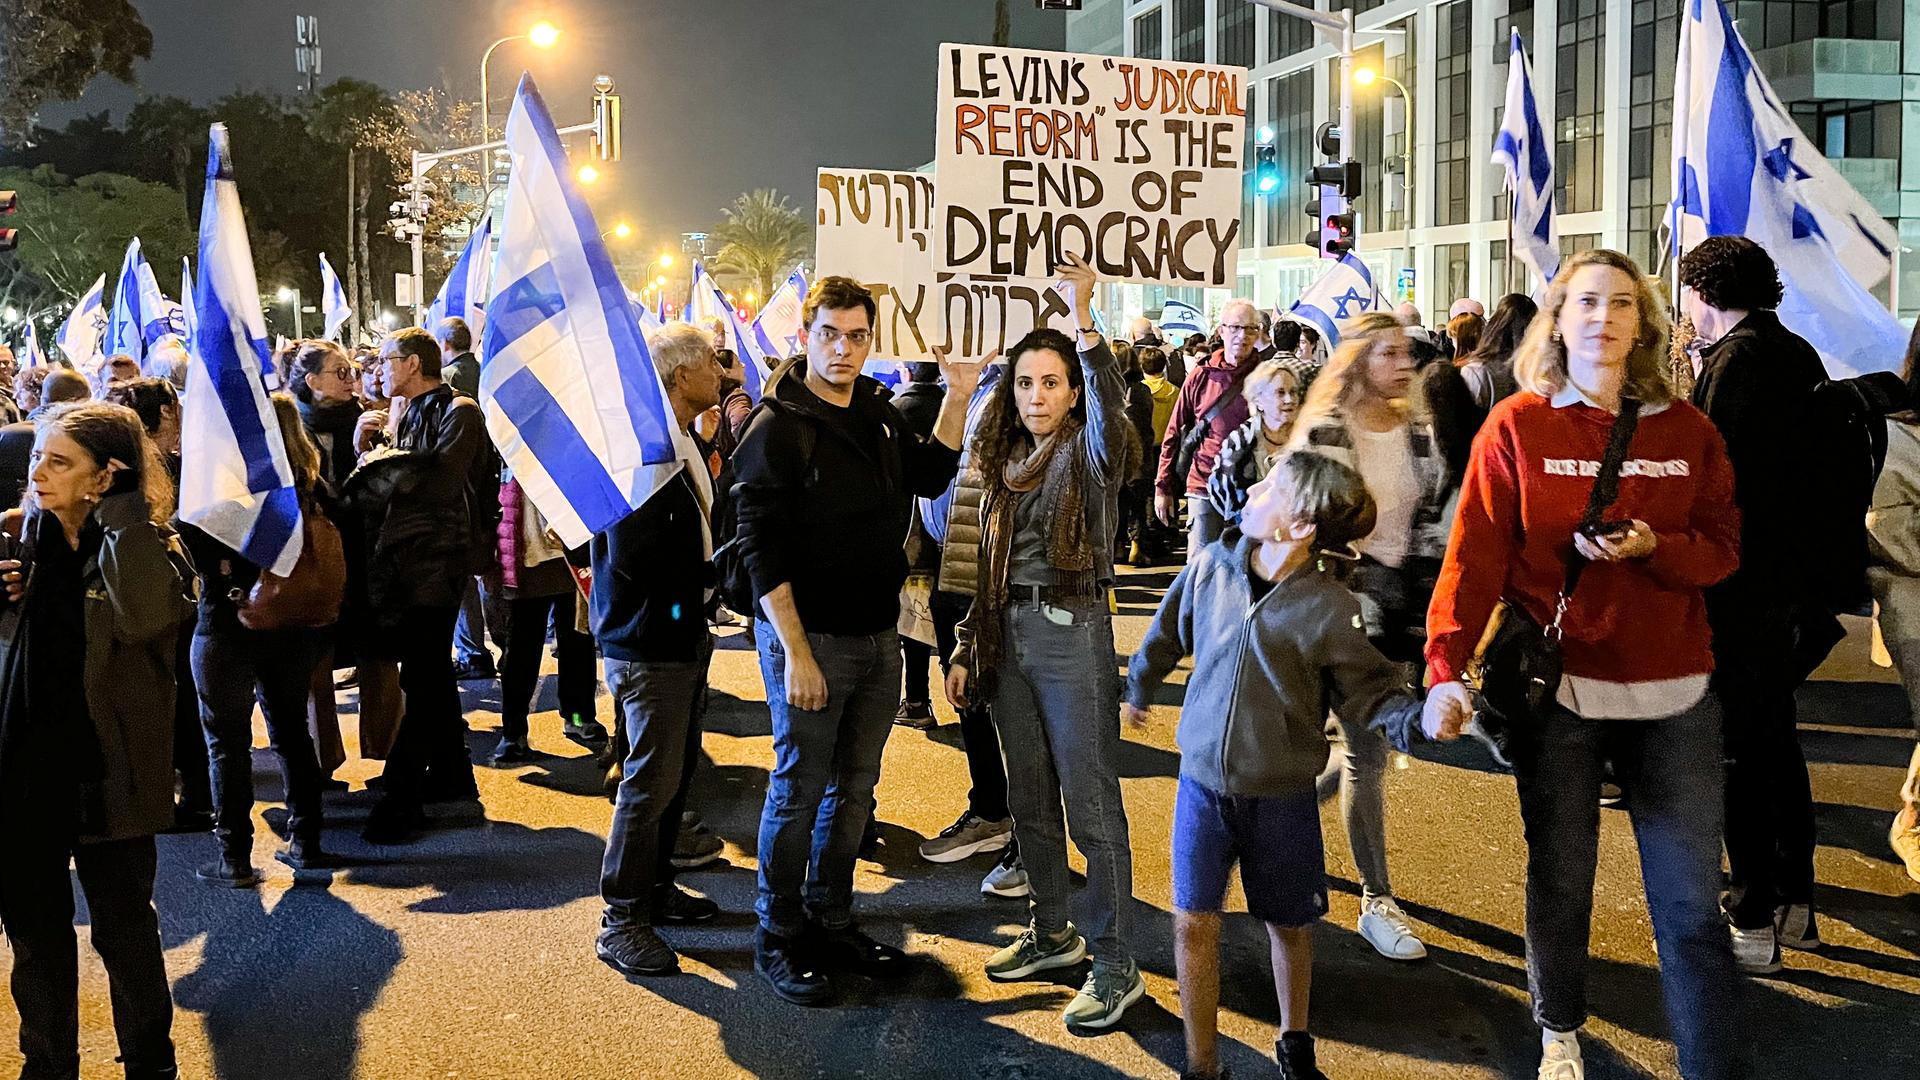 Menschen mit israelischen Fahnen und Protestplakaten gegen die Regierung versammeln sich am Abend auf der Straße.